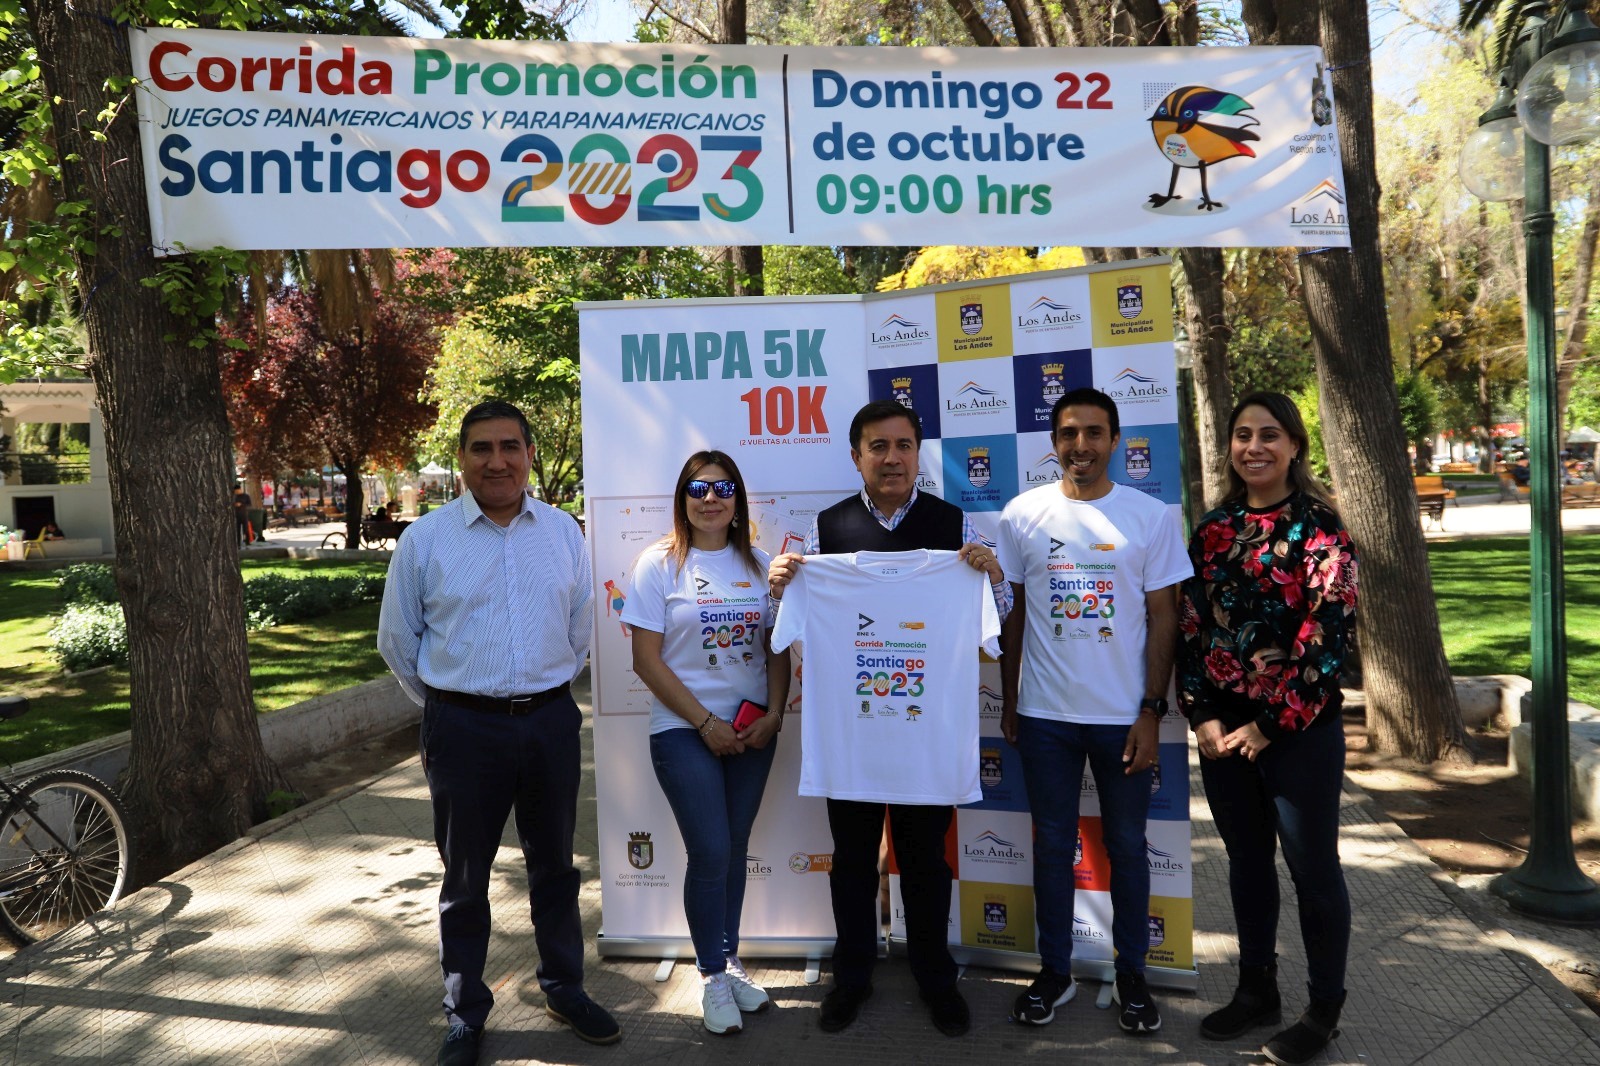 LOS ANDES: En Los Andes invitan a corrida familiar que promociona los Juegos Panamericanos Santiago 2023